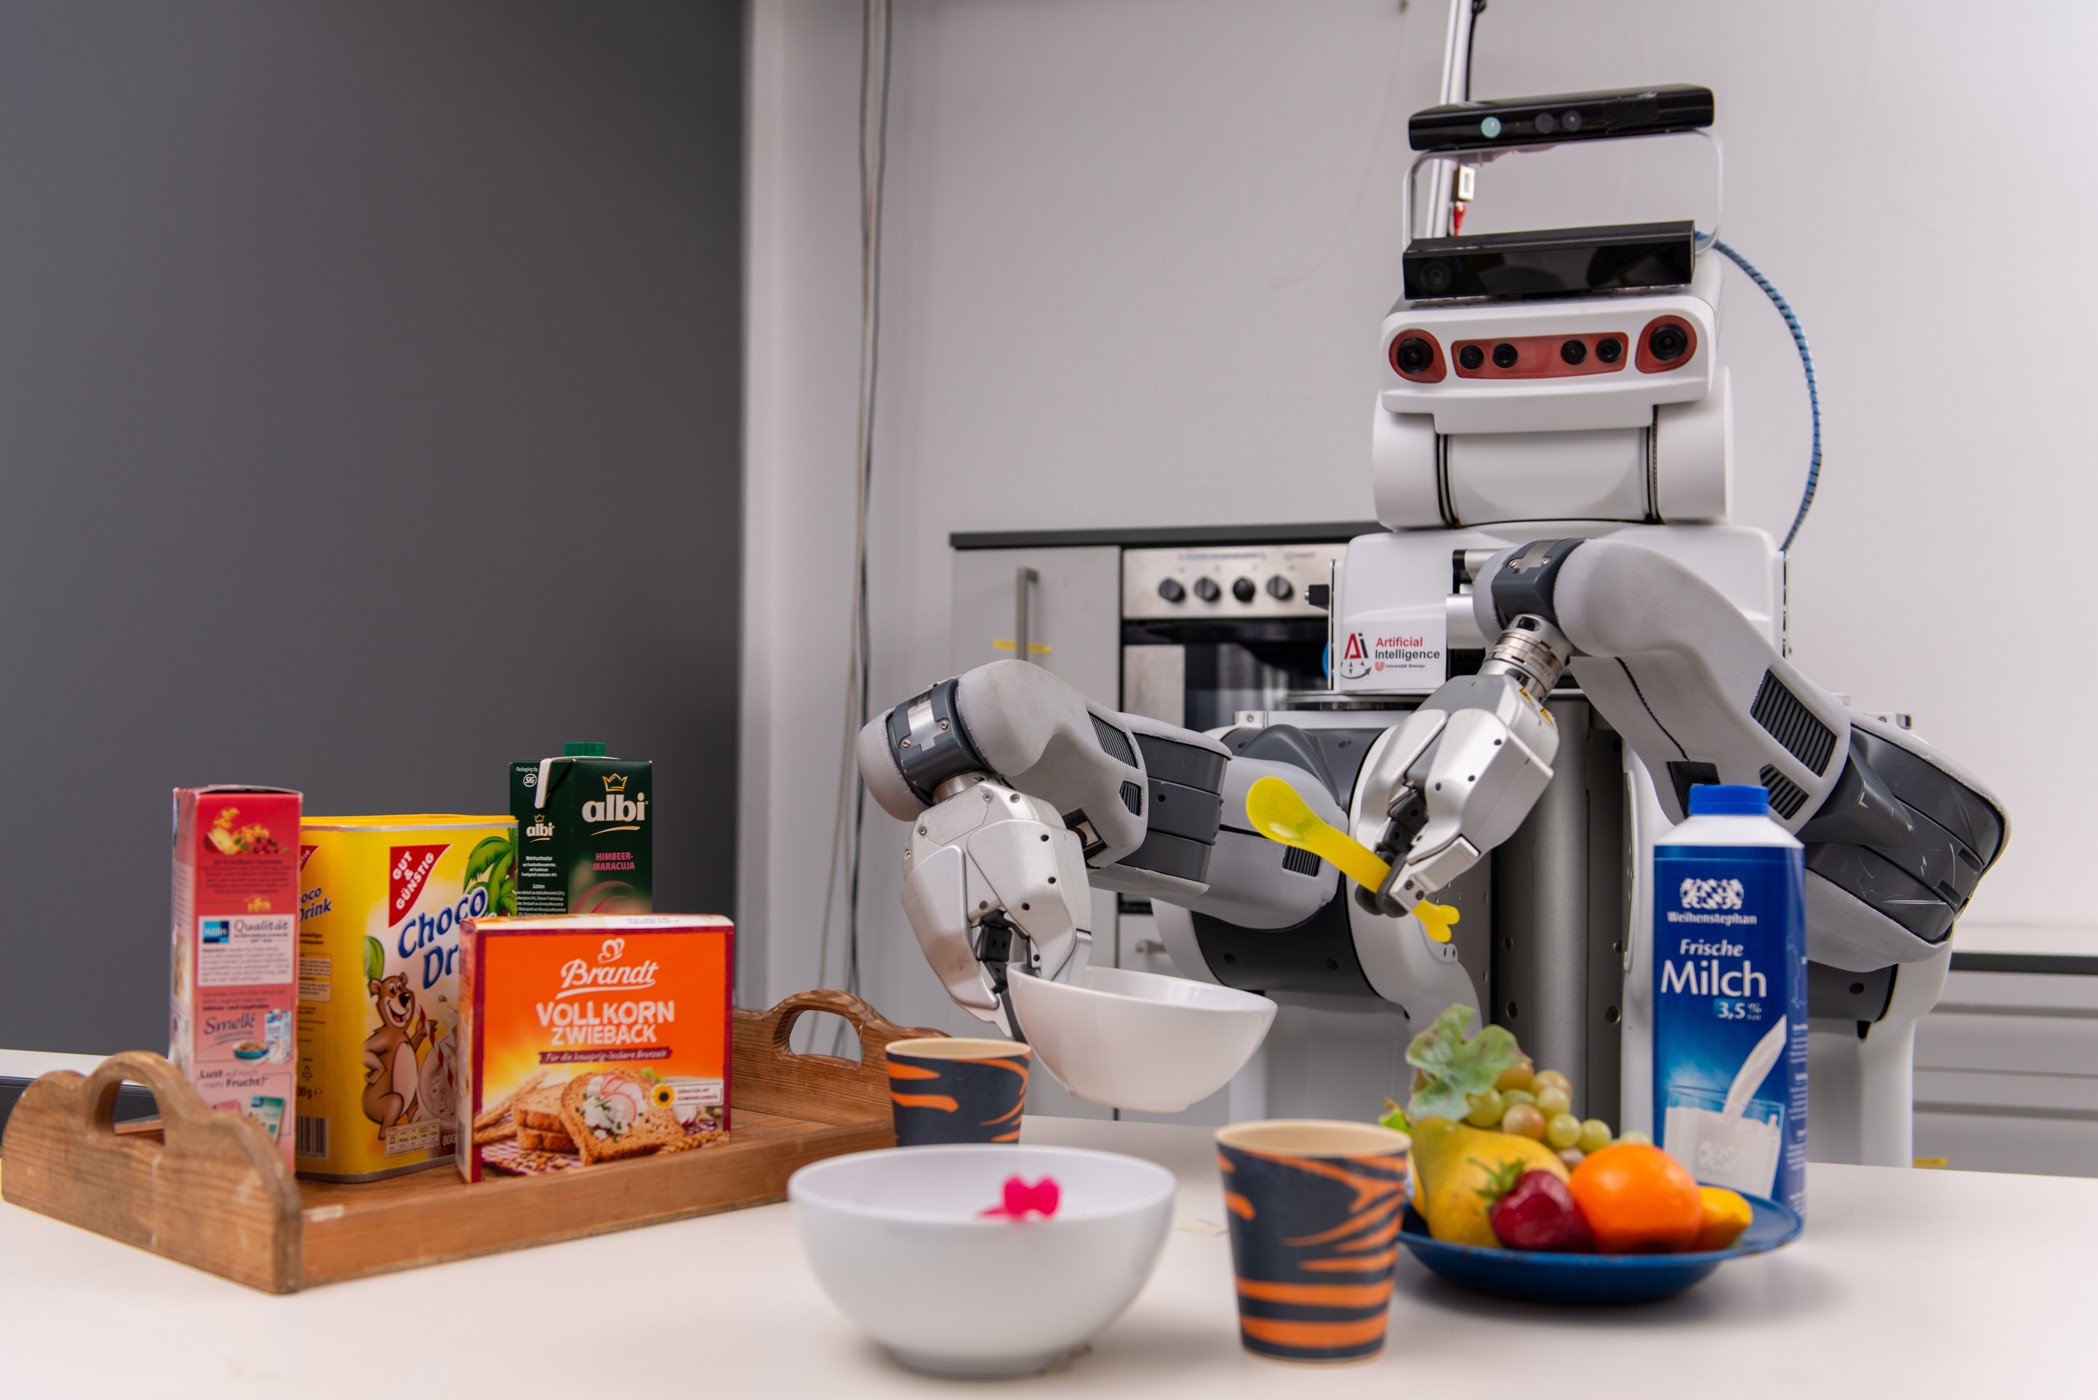 Ein Roboter steht mit Plastiklöffel und Schale in den "Händen" an einem Tresen Auf dem Tresen sind verschiedene Lebensmittel.